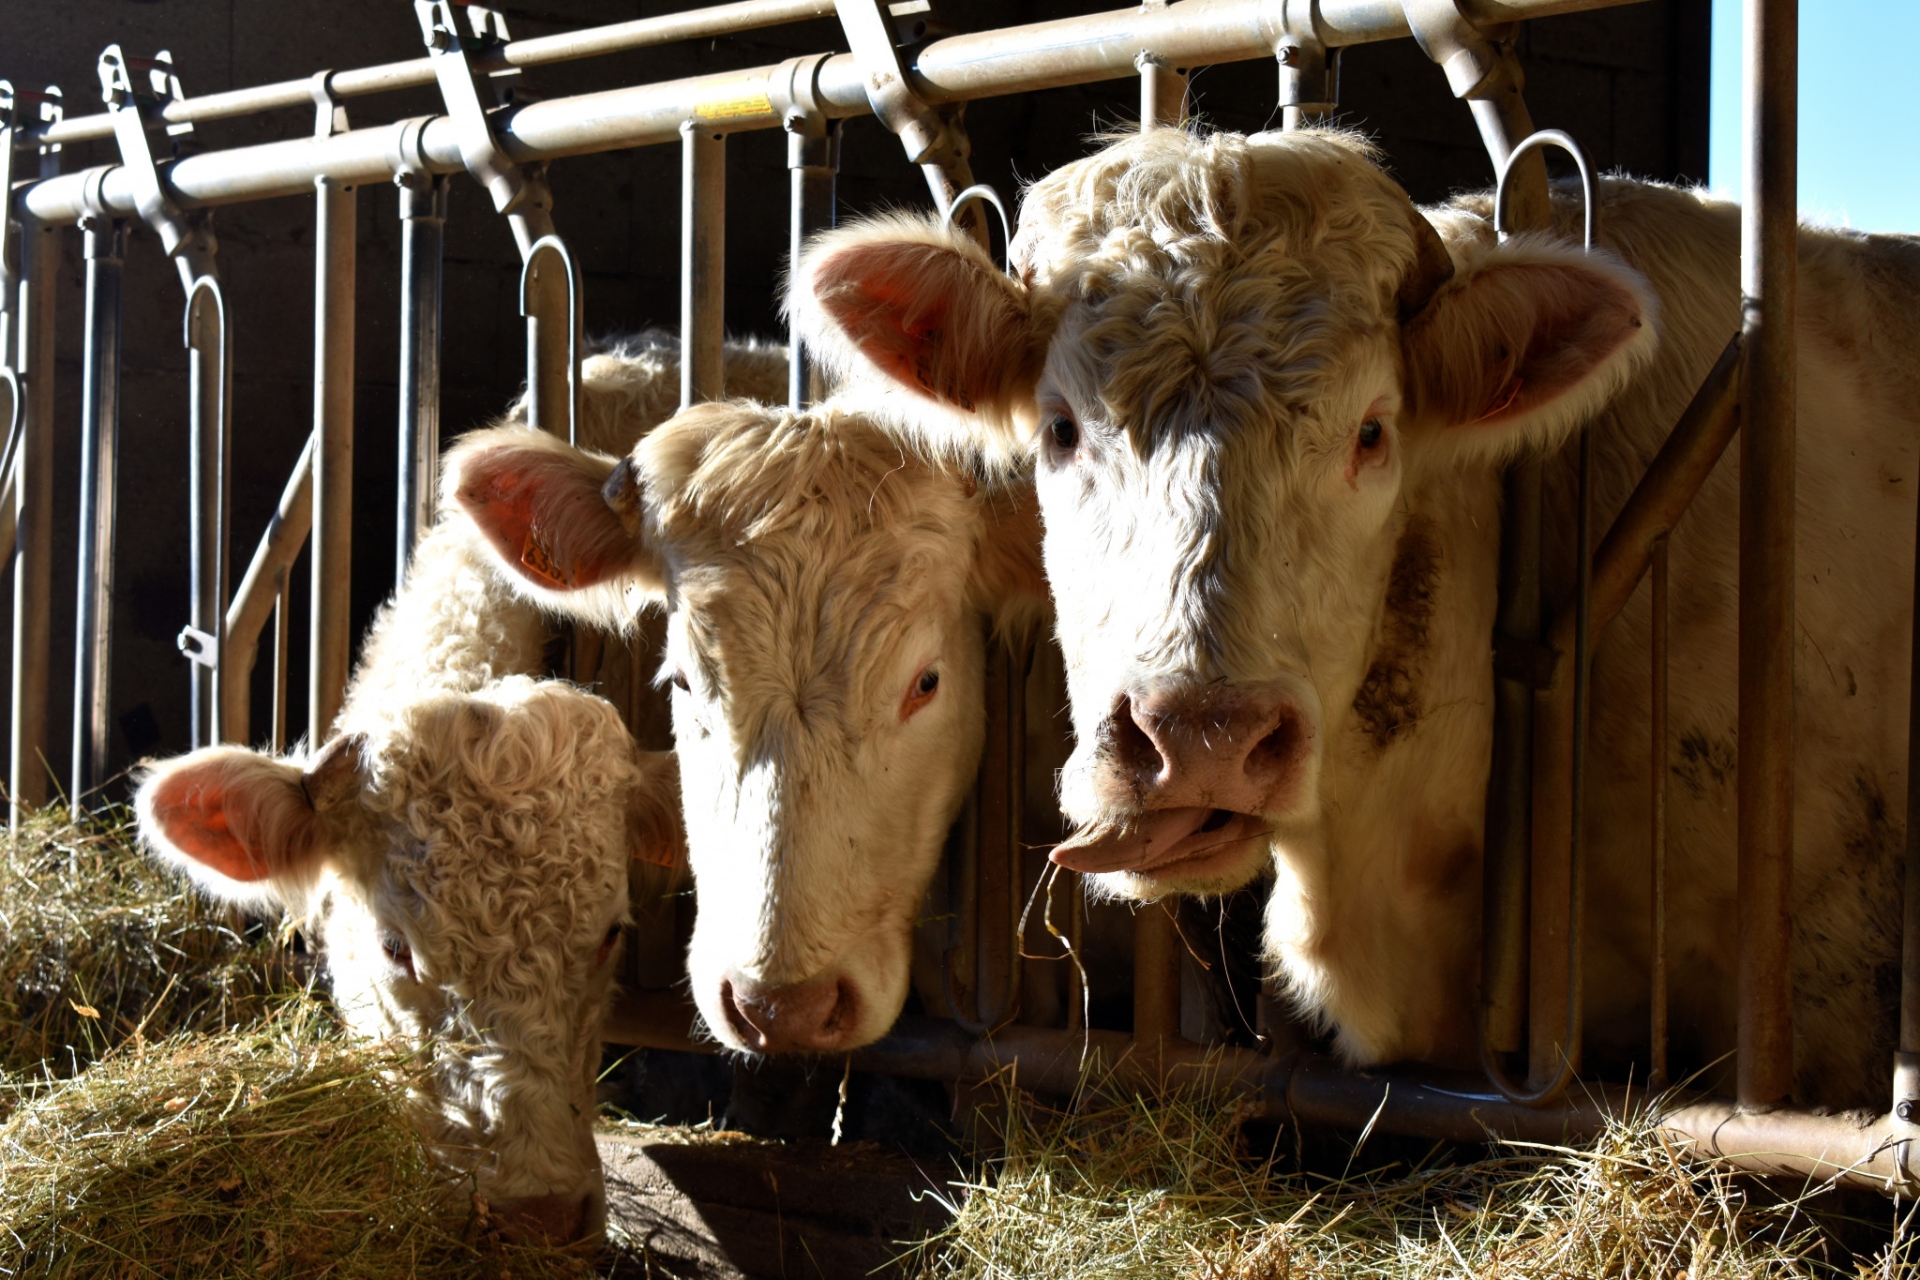 La besnoitiose bovine pose problème en élevage allaitant autant qu'en lait